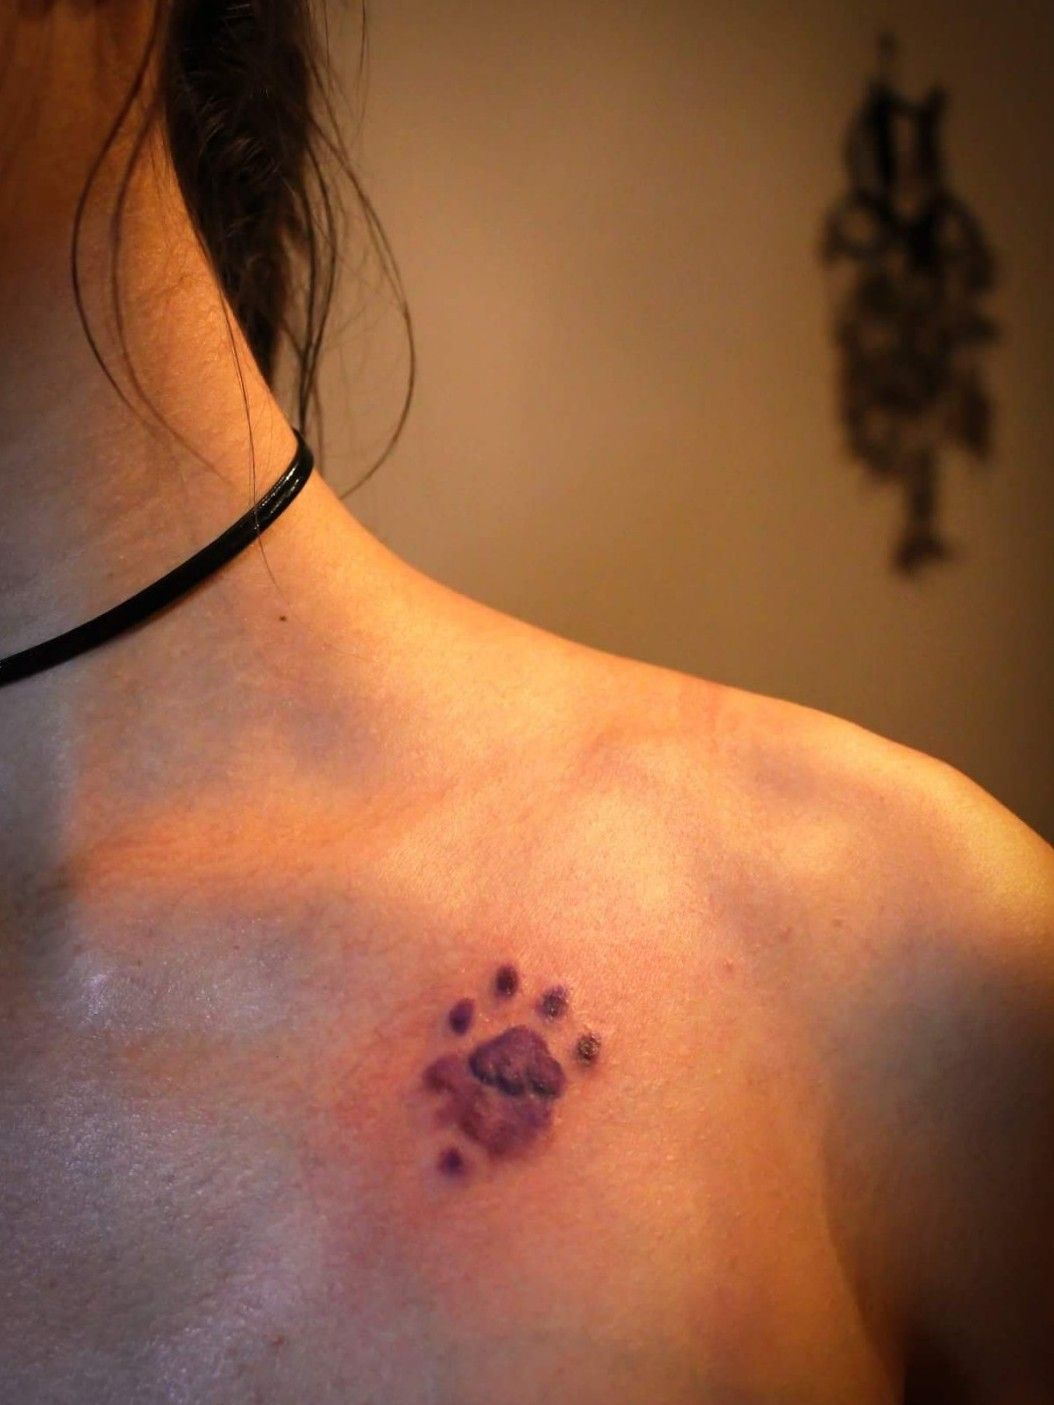 real cat paw print tattoo